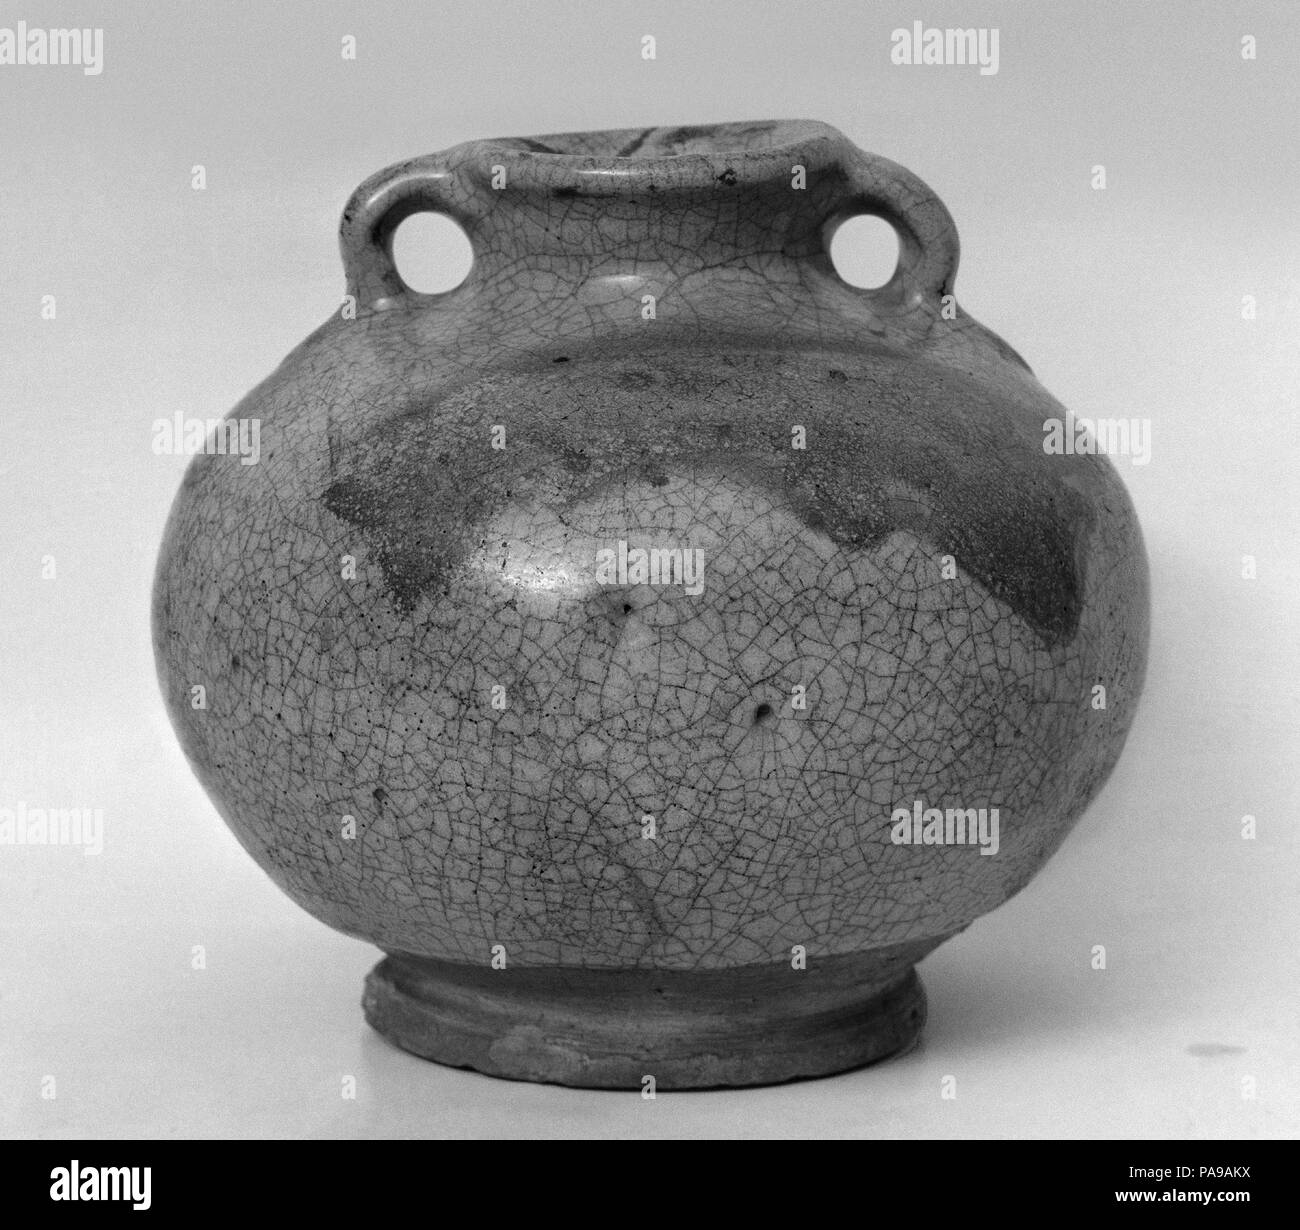 Jar. Culture: China. Dimensions: H. 5 in. (12.7 cm); Diam. 5 1/2 in. (14 cm). Museum: Metropolitan Museum of Art, New York, USA. Stock Photo